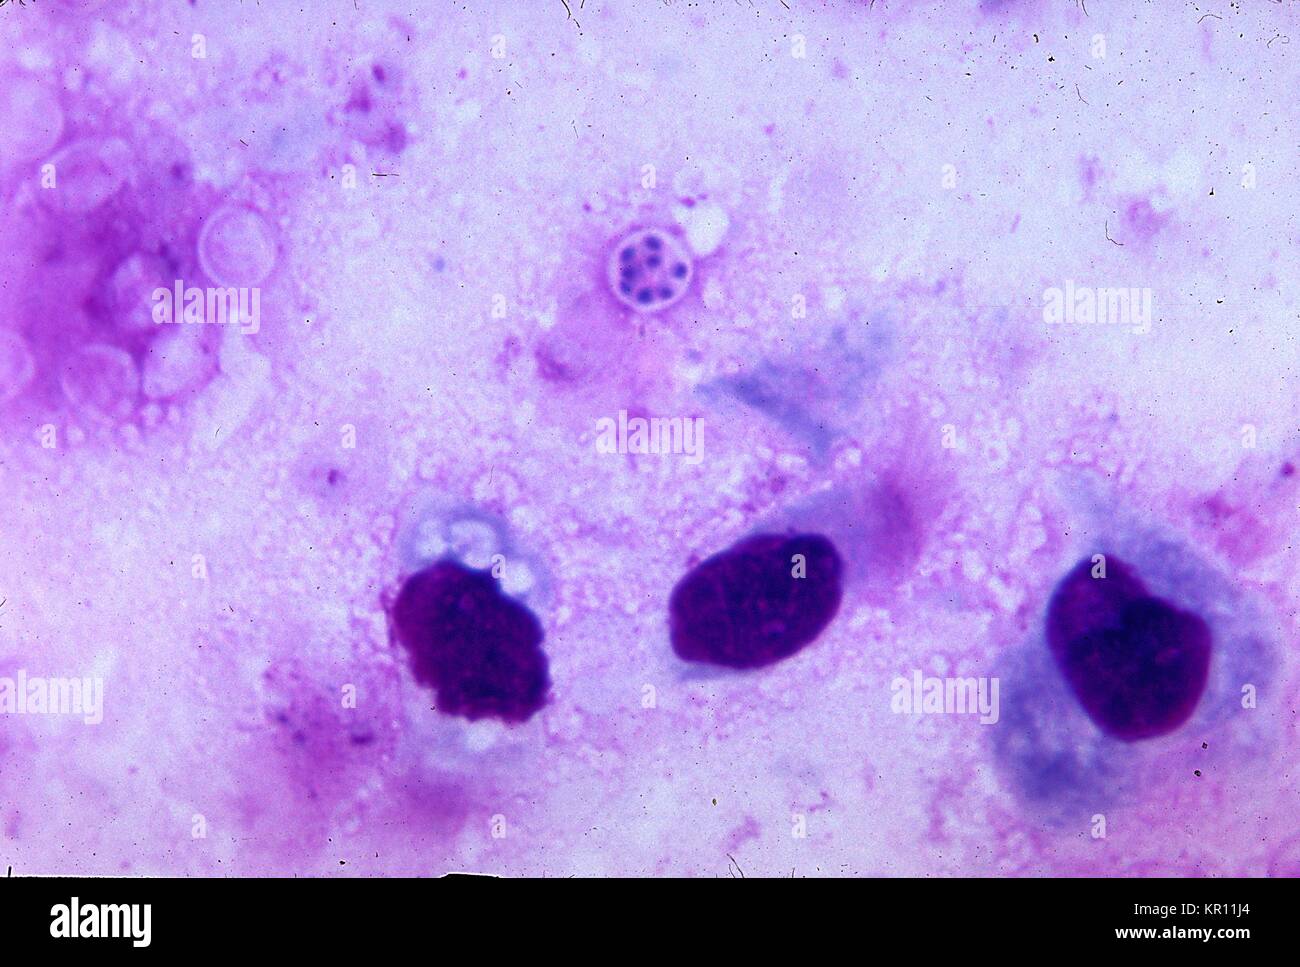 Pneumocystis jirovecii, früher bekannt als Pneumocystis carinii, ist in der Lunge Eindruck bestreichen, mit Giemsa Fleck, 1971. Pneumocystis jirovecii, ist in der Umwelt gefunden, als auch in der Lunge von gesunden Menschen und Tieren, und eine Erkrankung bei immunsupprimierten Personen, und ist wohl die wichtigste Ursache der Pneumonie in immunocompromised Host. Bild mit freundlicher Genehmigung von CDC/Dr. Mae Melvin. Stockfoto